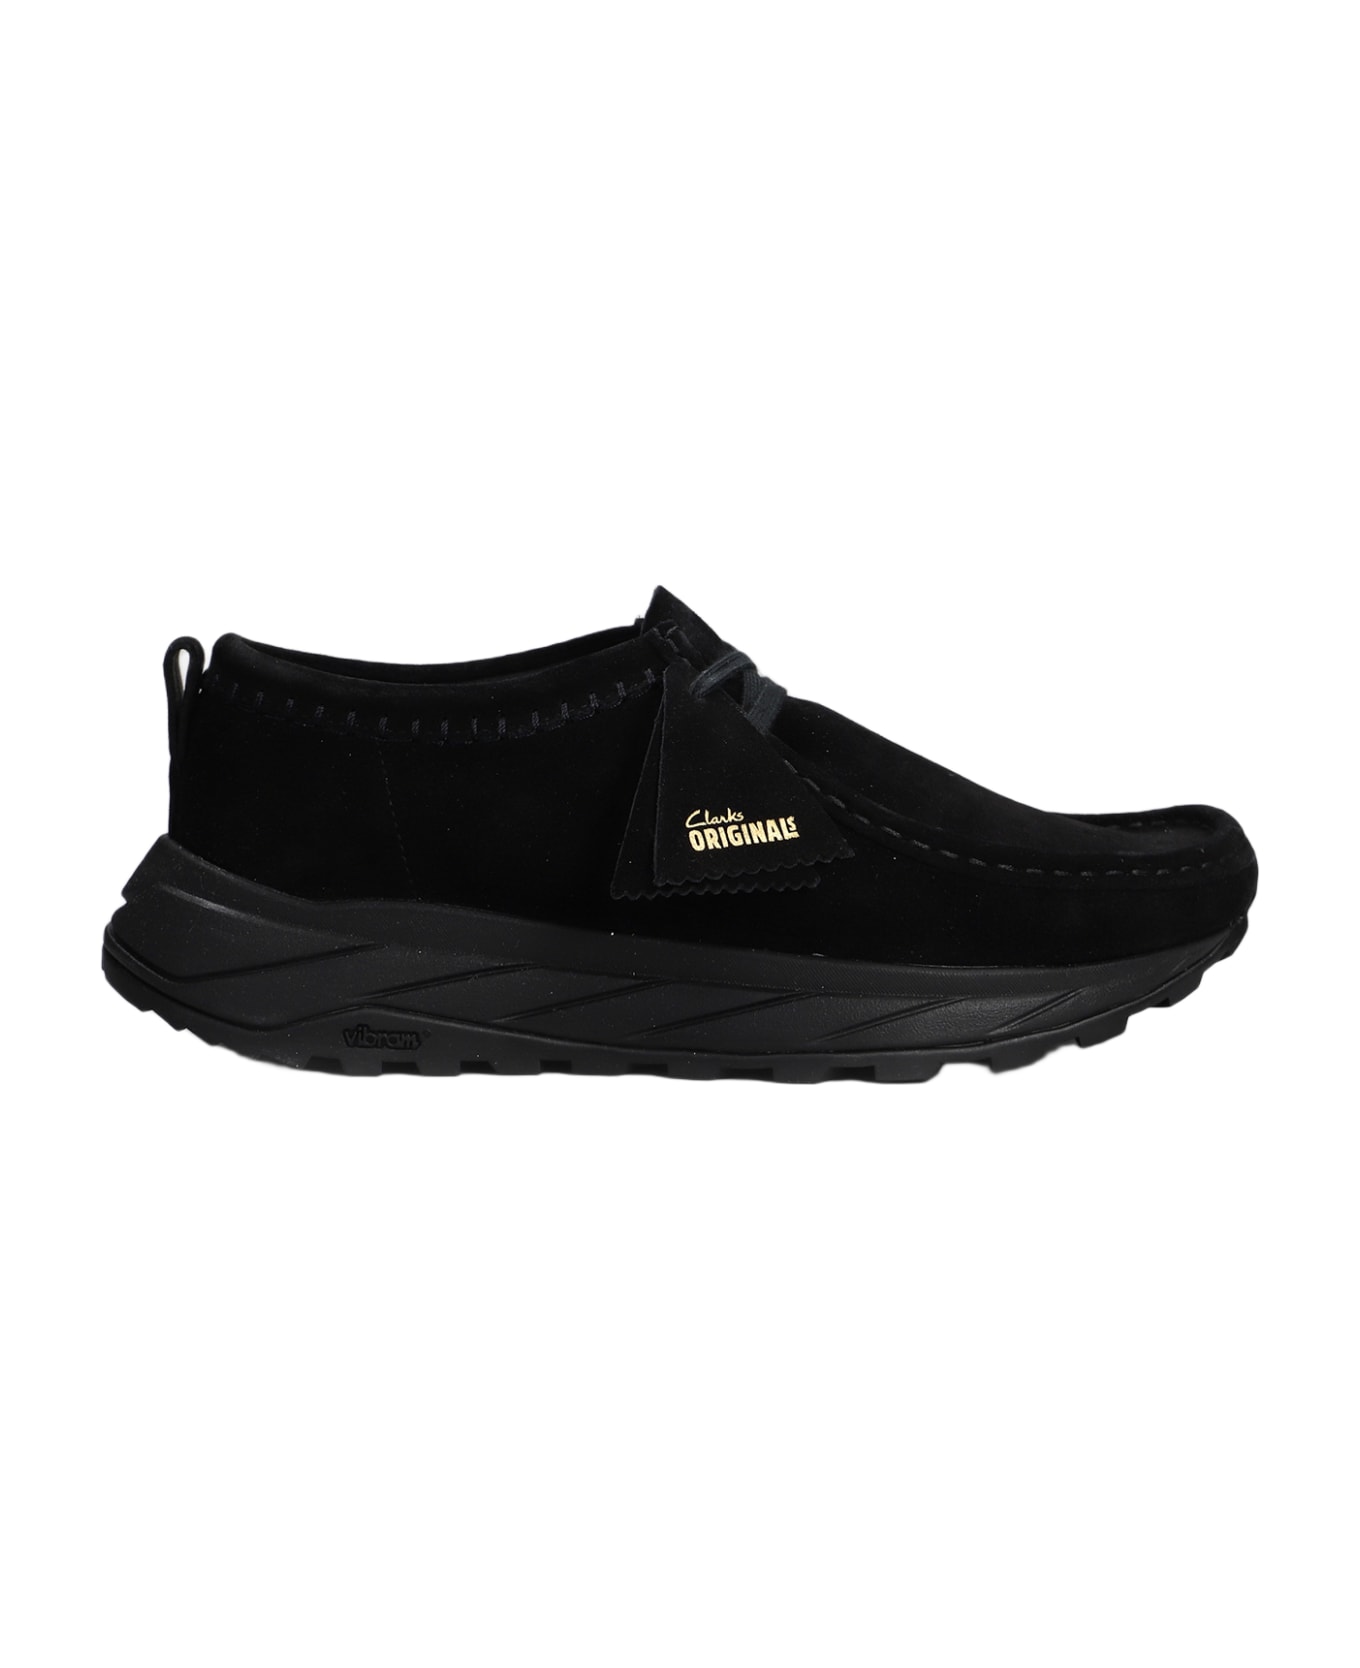 Clarks Walla Eden Lo Sneakers In Black Suede - black